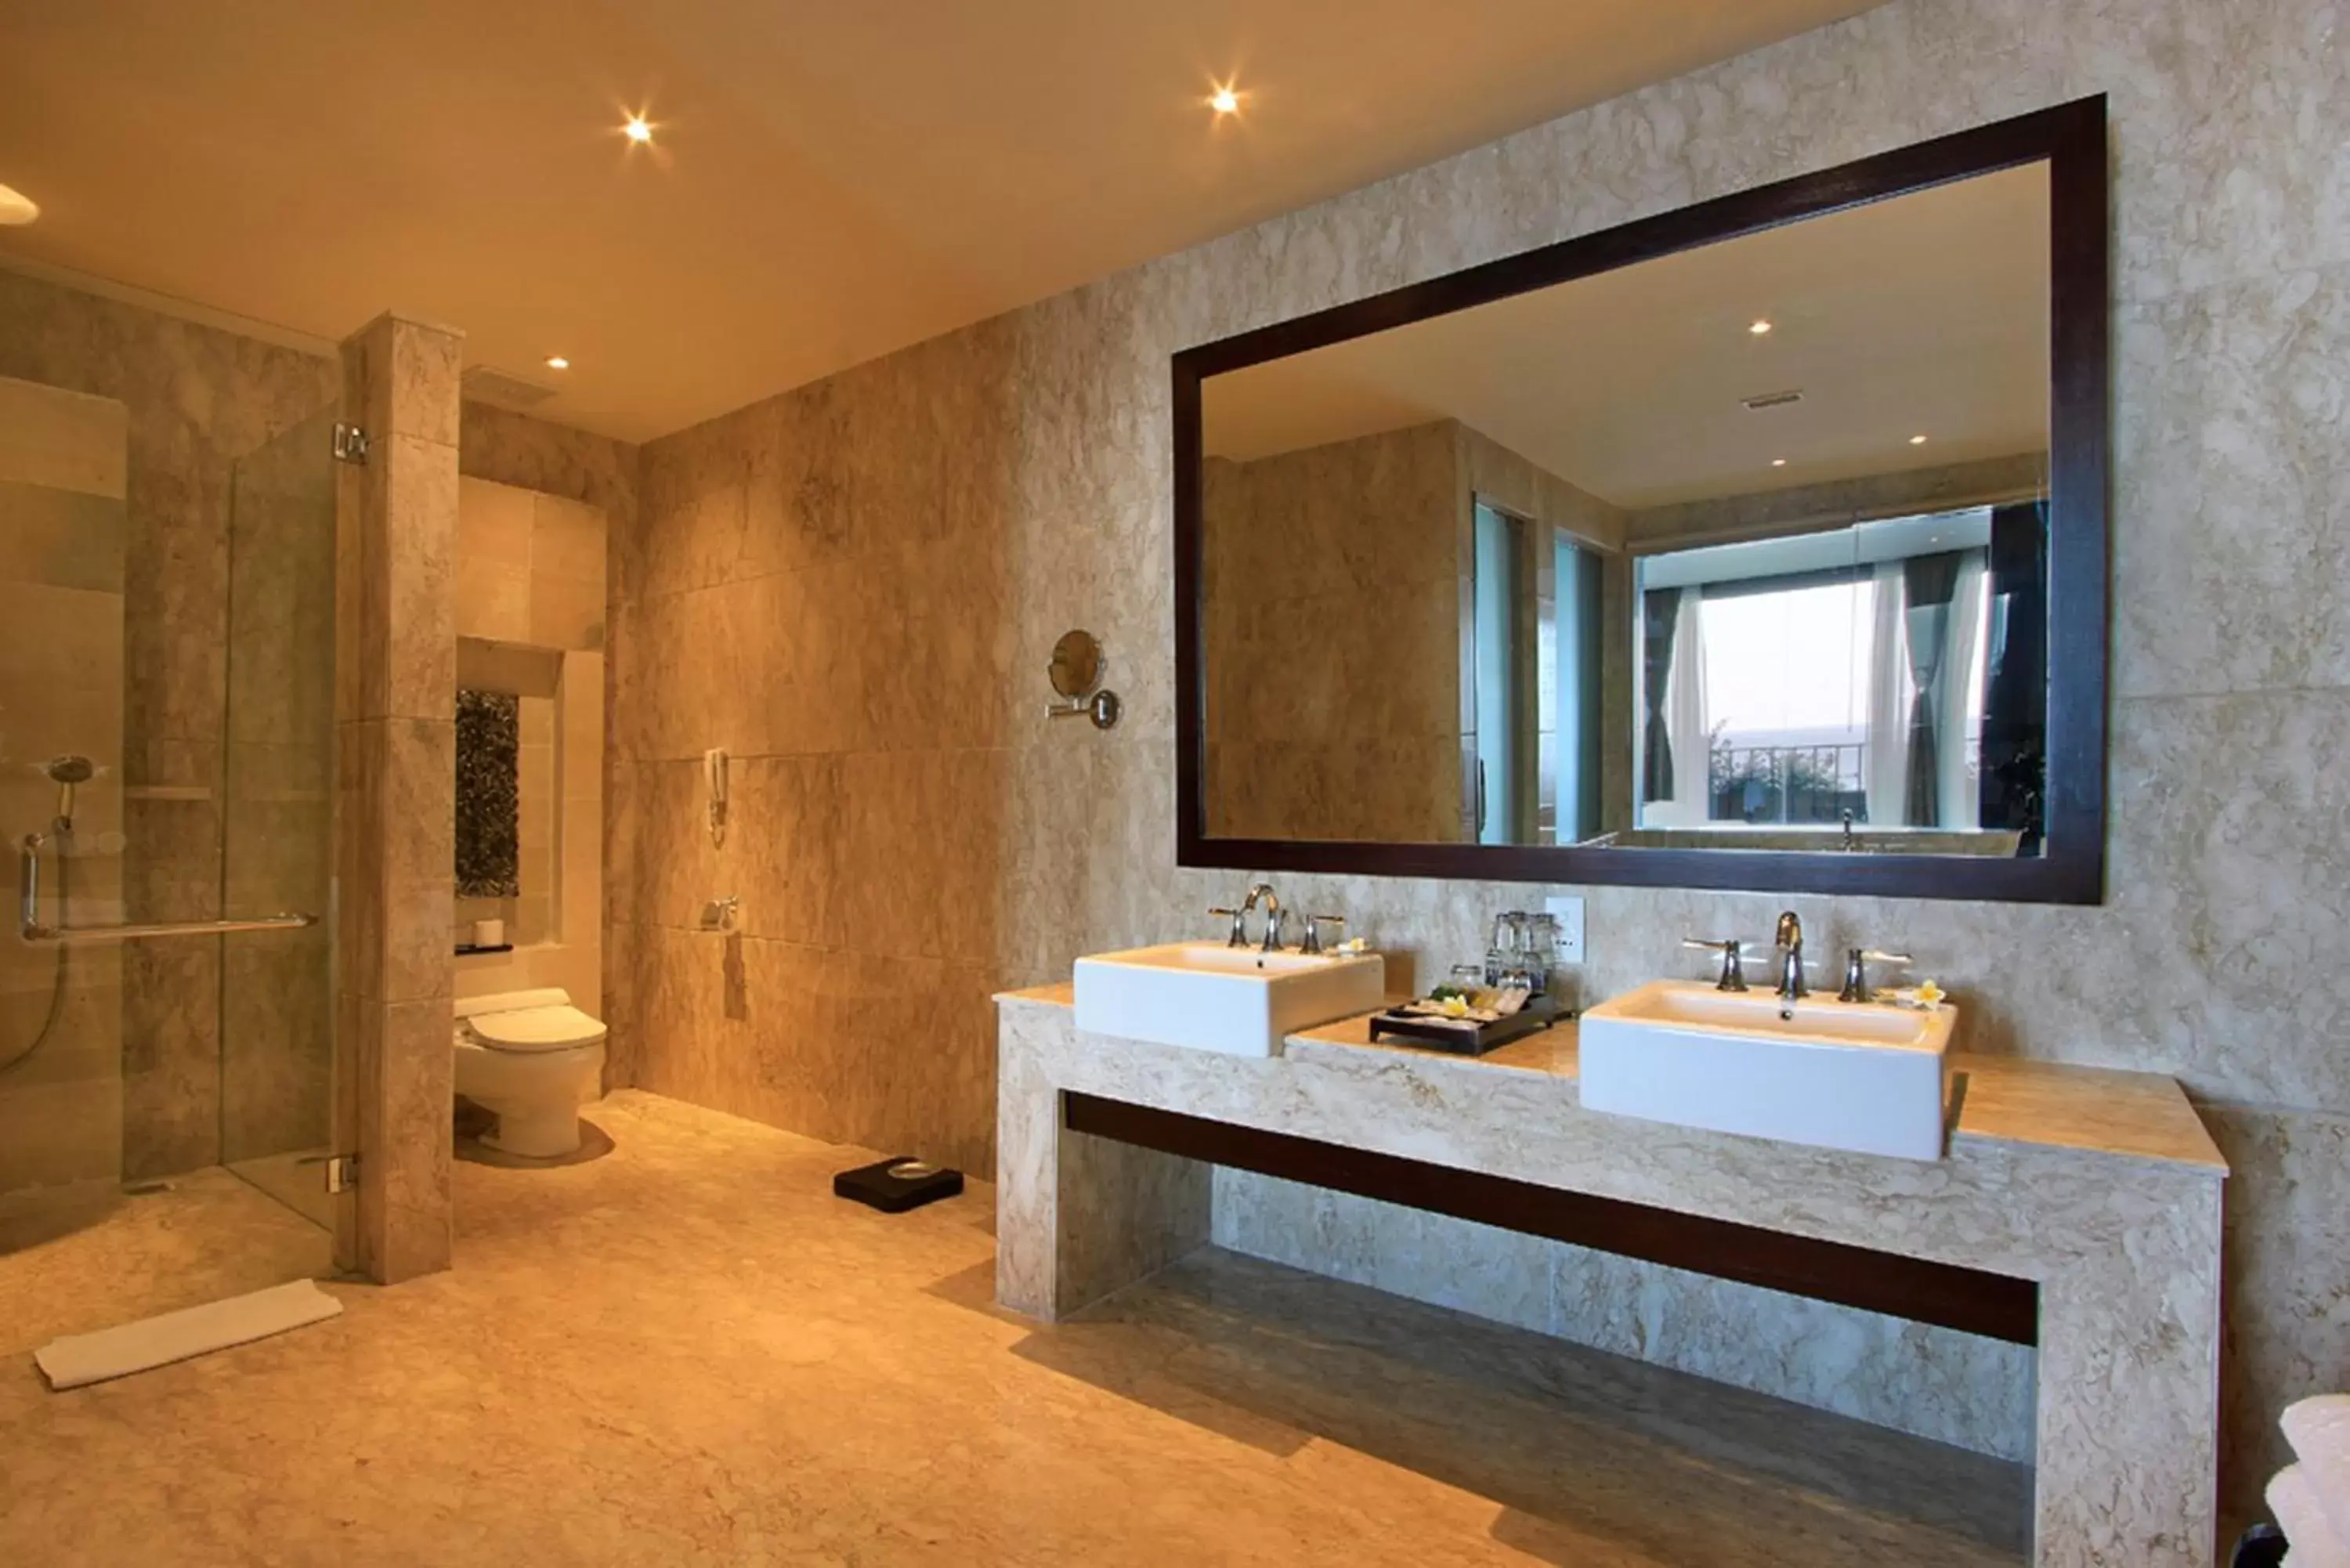 Bathroom in Ulu Segara Luxury Suites & Villas